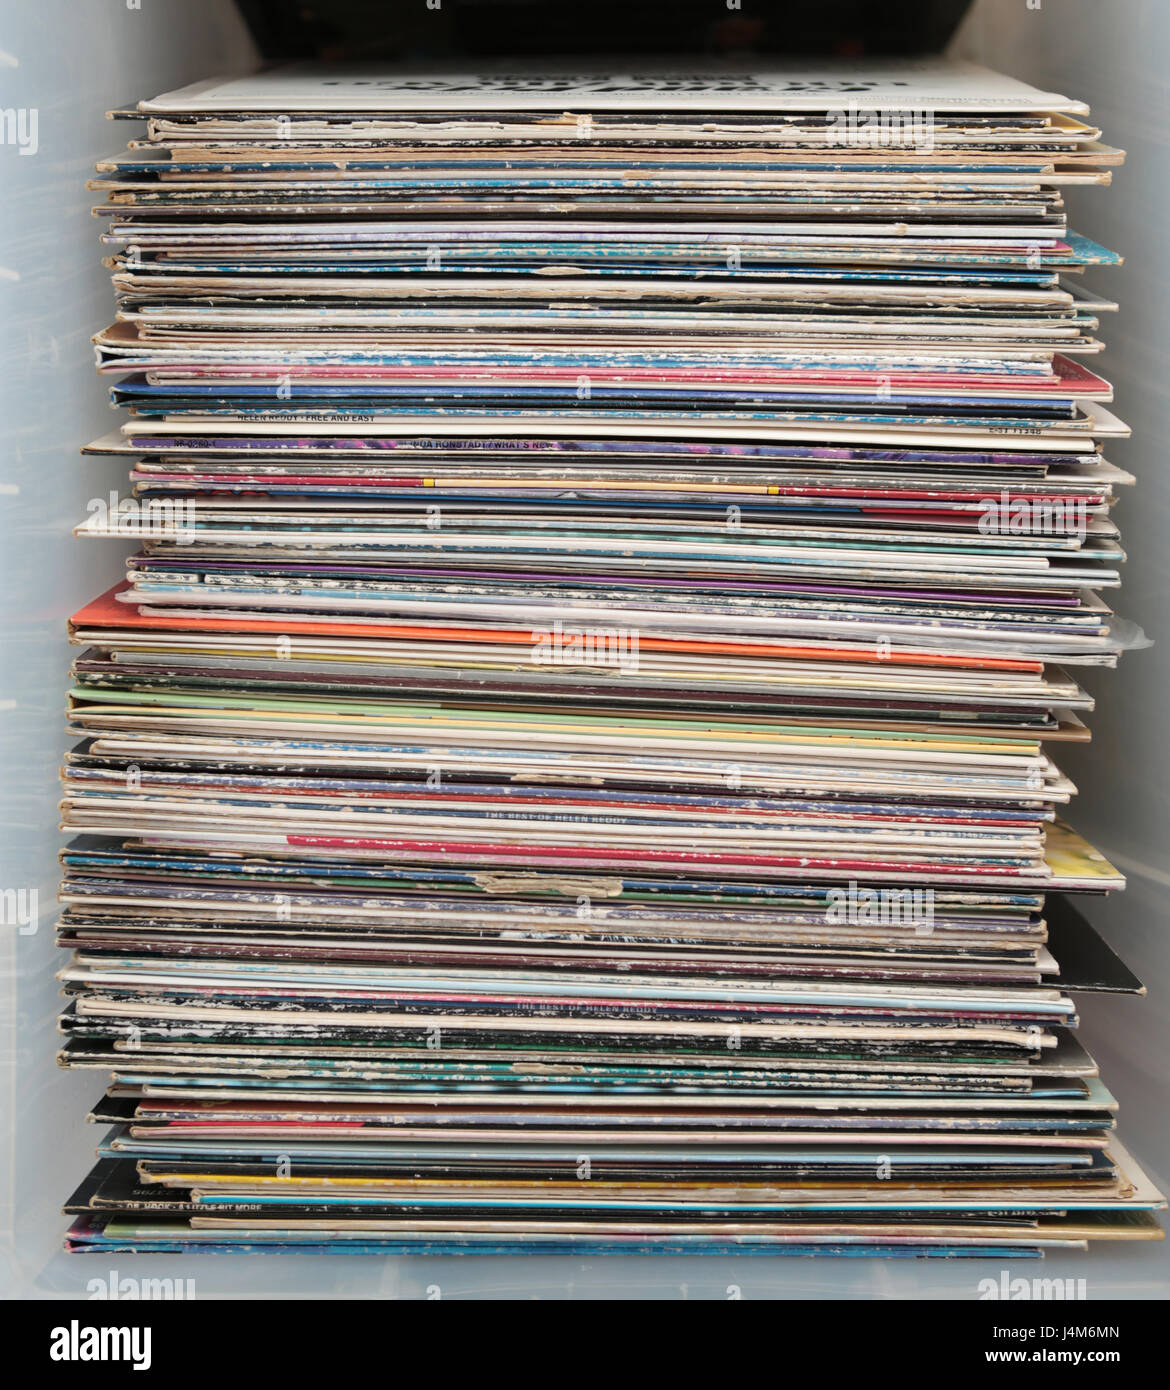 Les disques vinyles stockées dans une boîte Banque D'Images